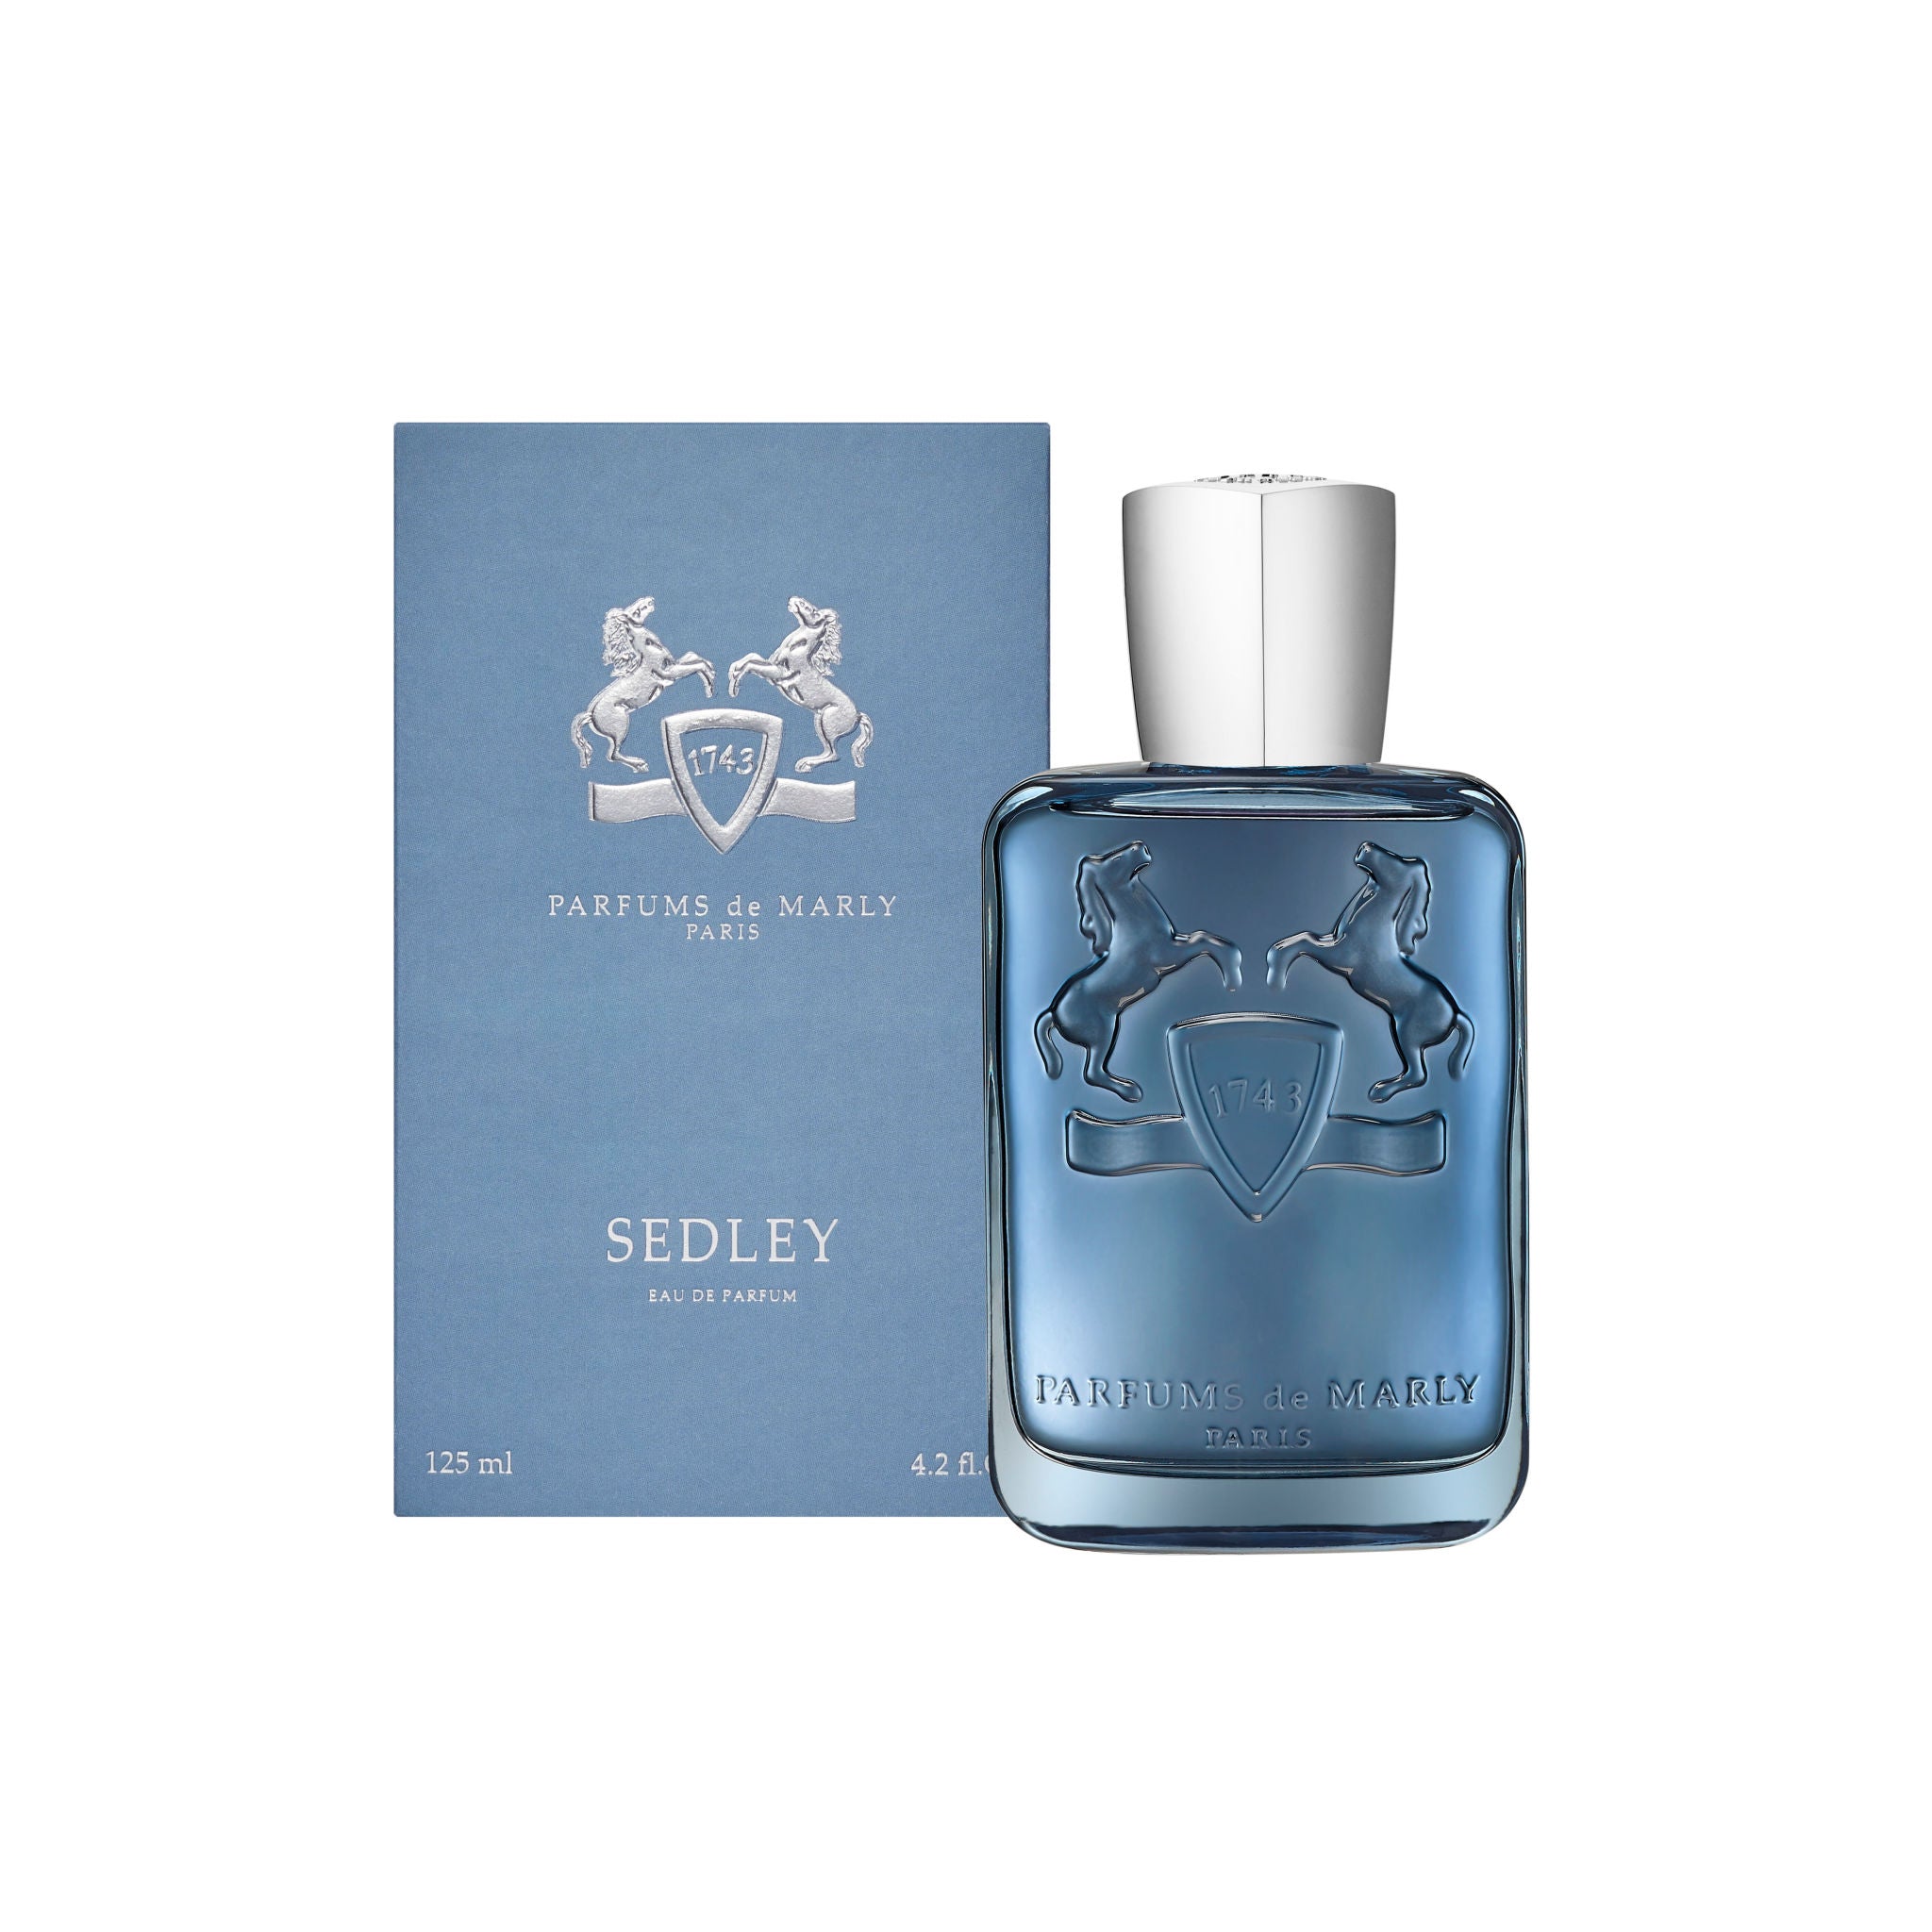 Parfums de Marly Sedley Eau de Parfum Size variant: 4.2 fl oz main image.